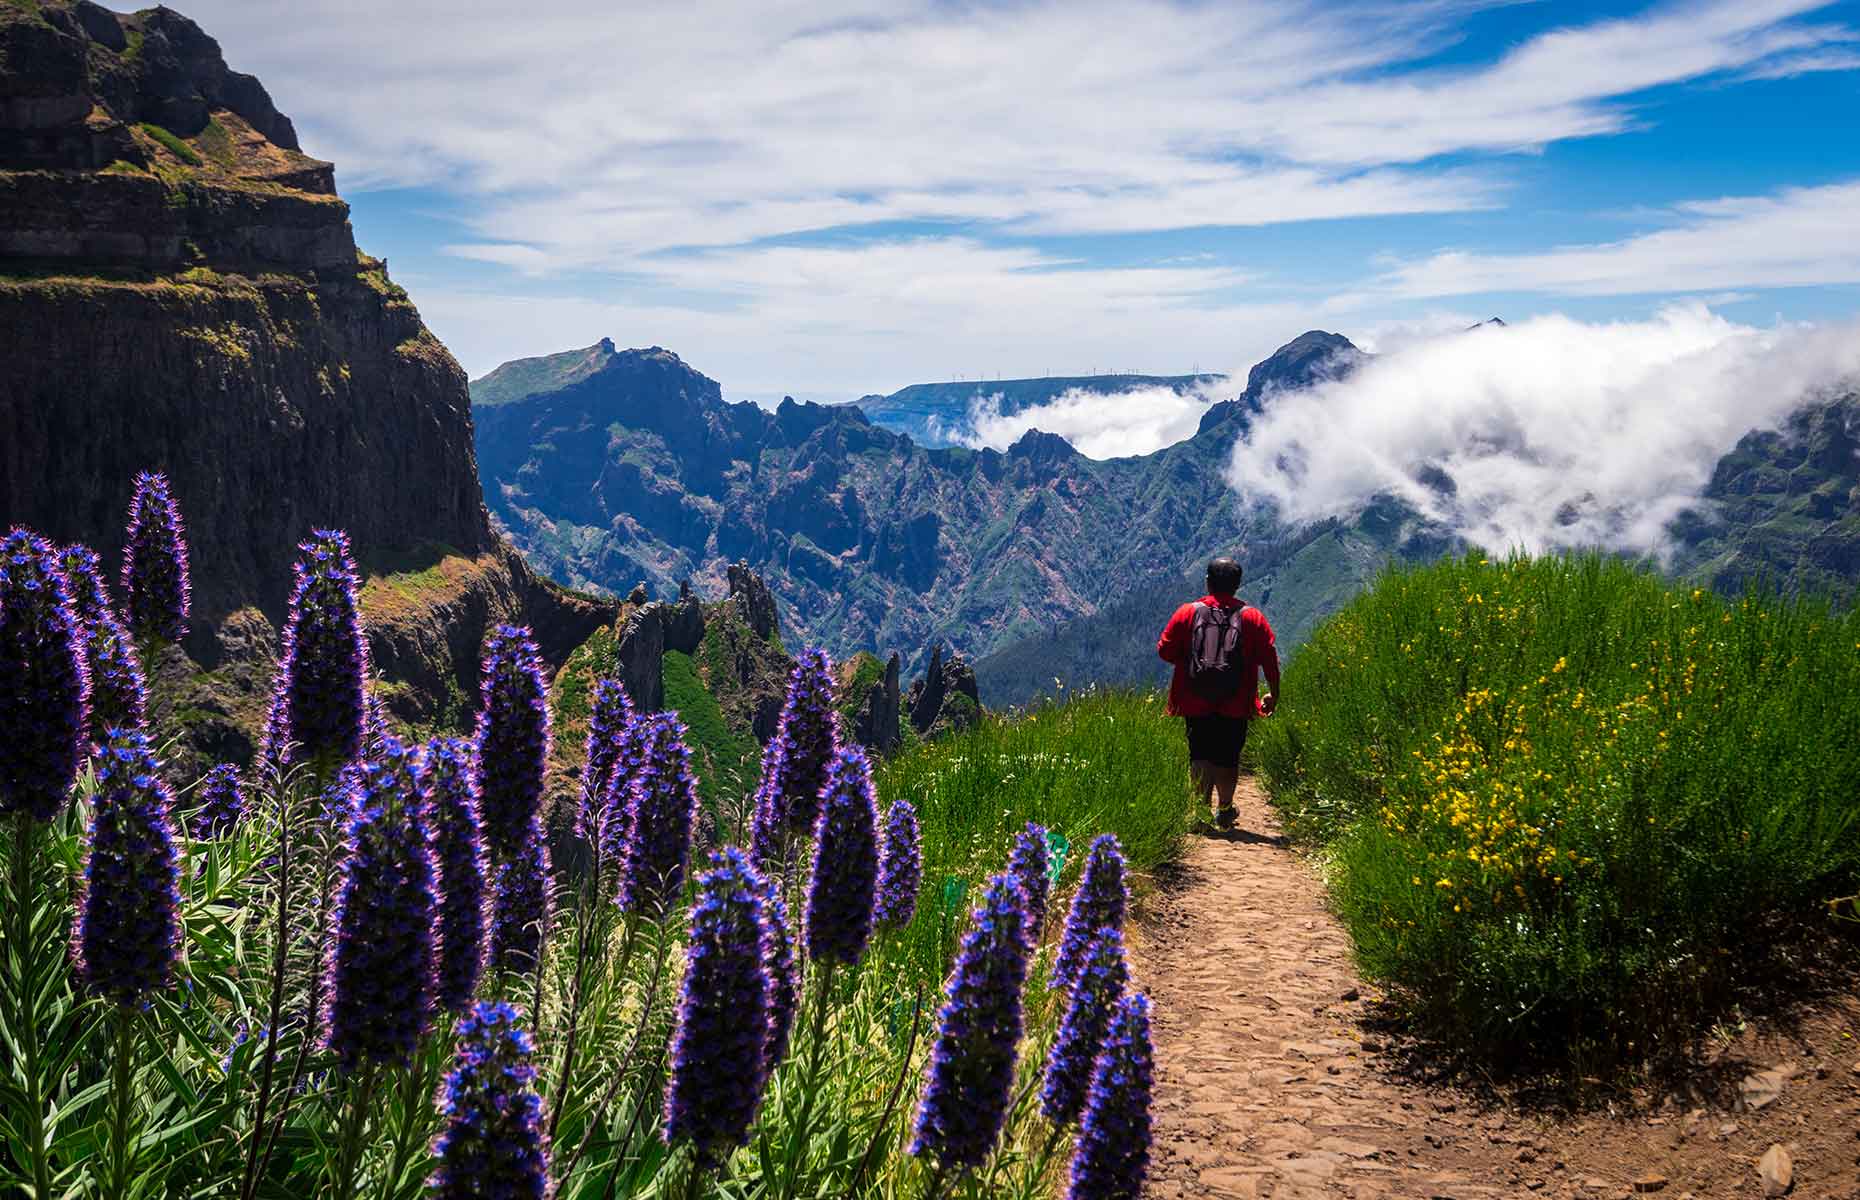 Pico Ruivo, Madeira (Image: yusuf madi/Shutterstock)